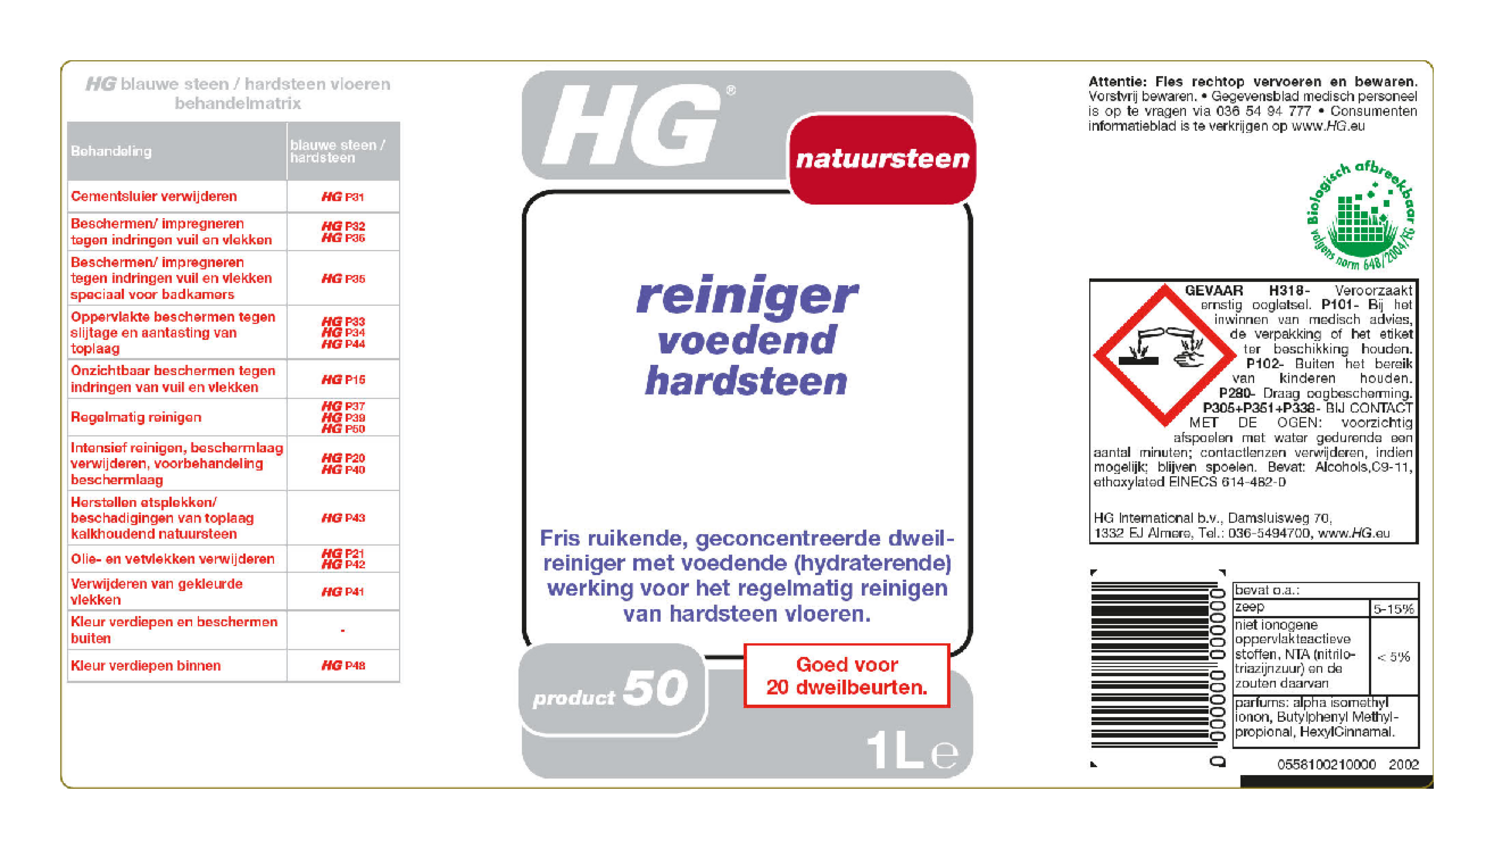 Hardsteen Reiniger Voedend Product 50 afbeelding van document #1, etiket